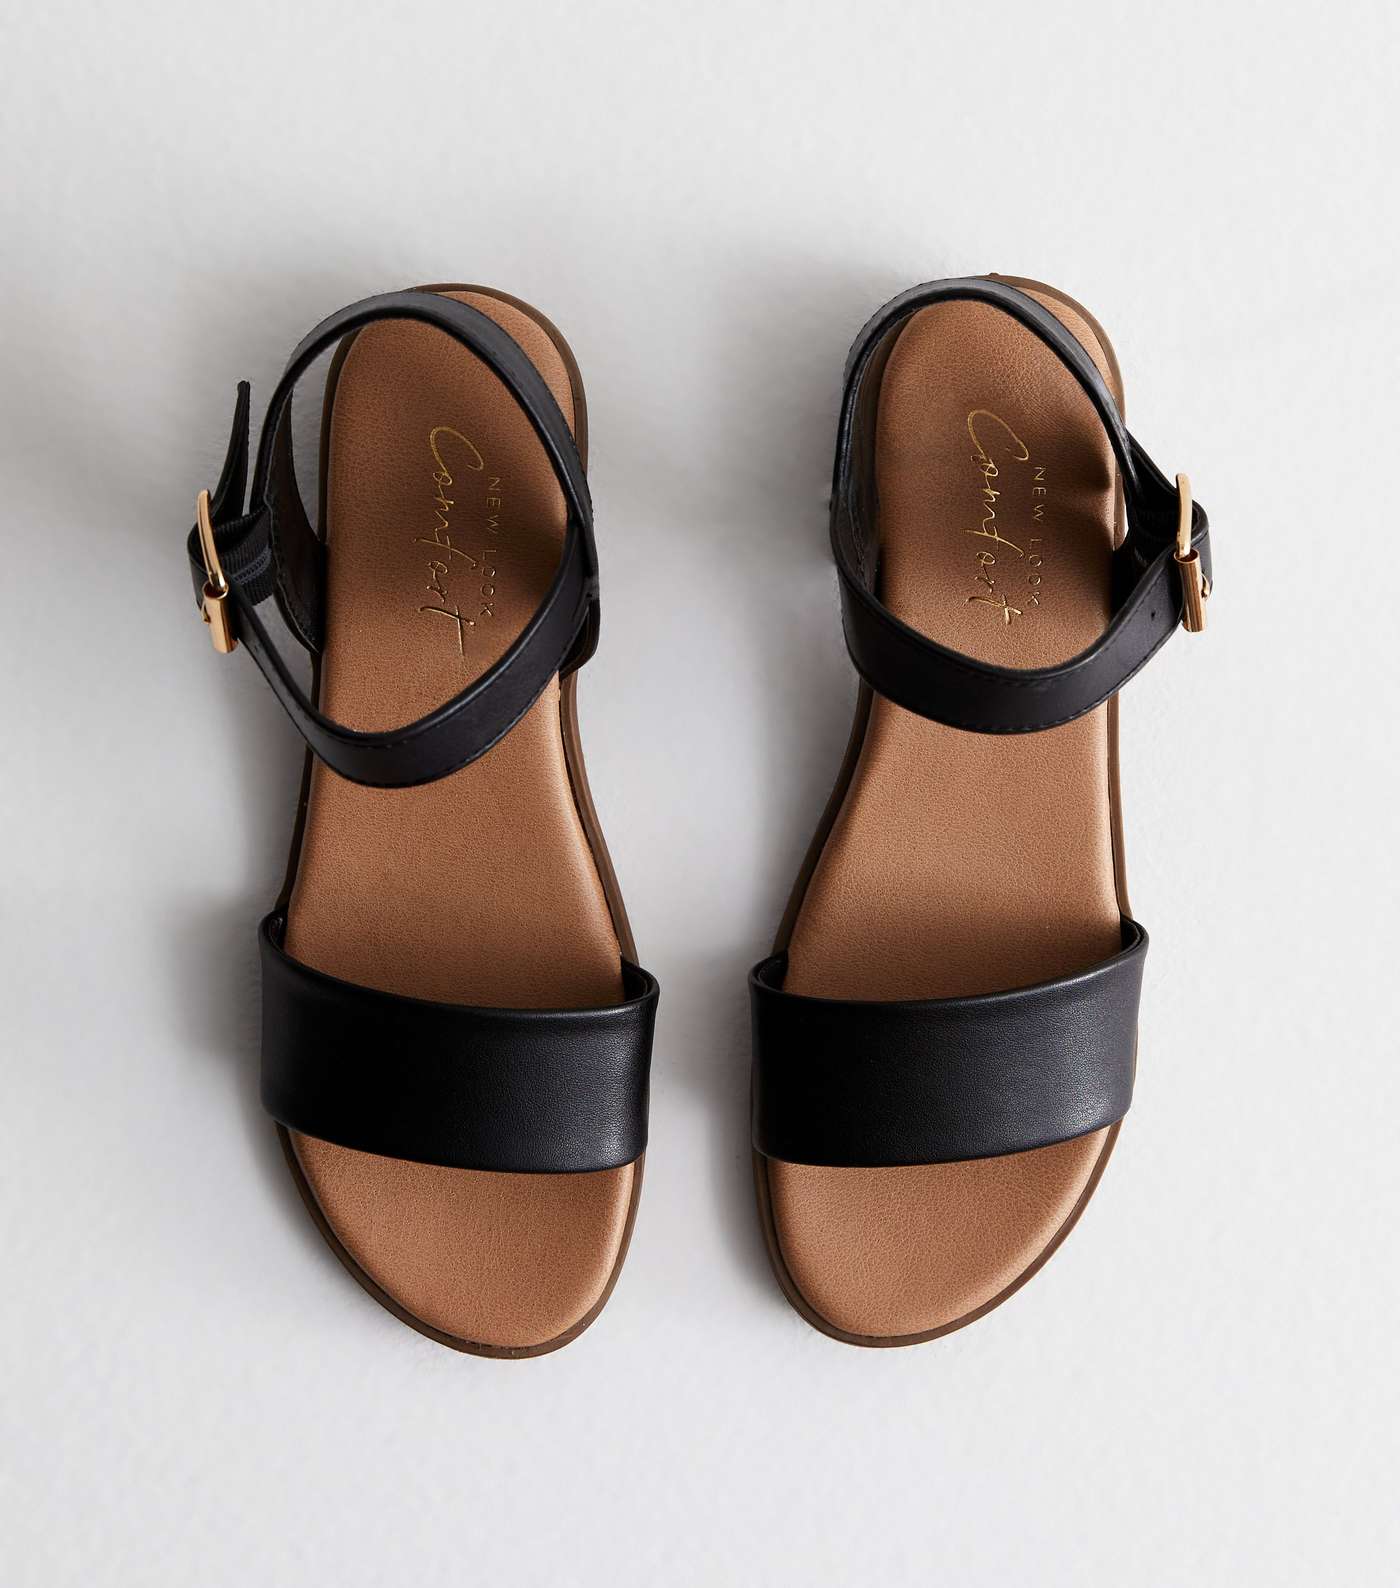 Black Leather-Look Low Block Heel Sandals Image 3